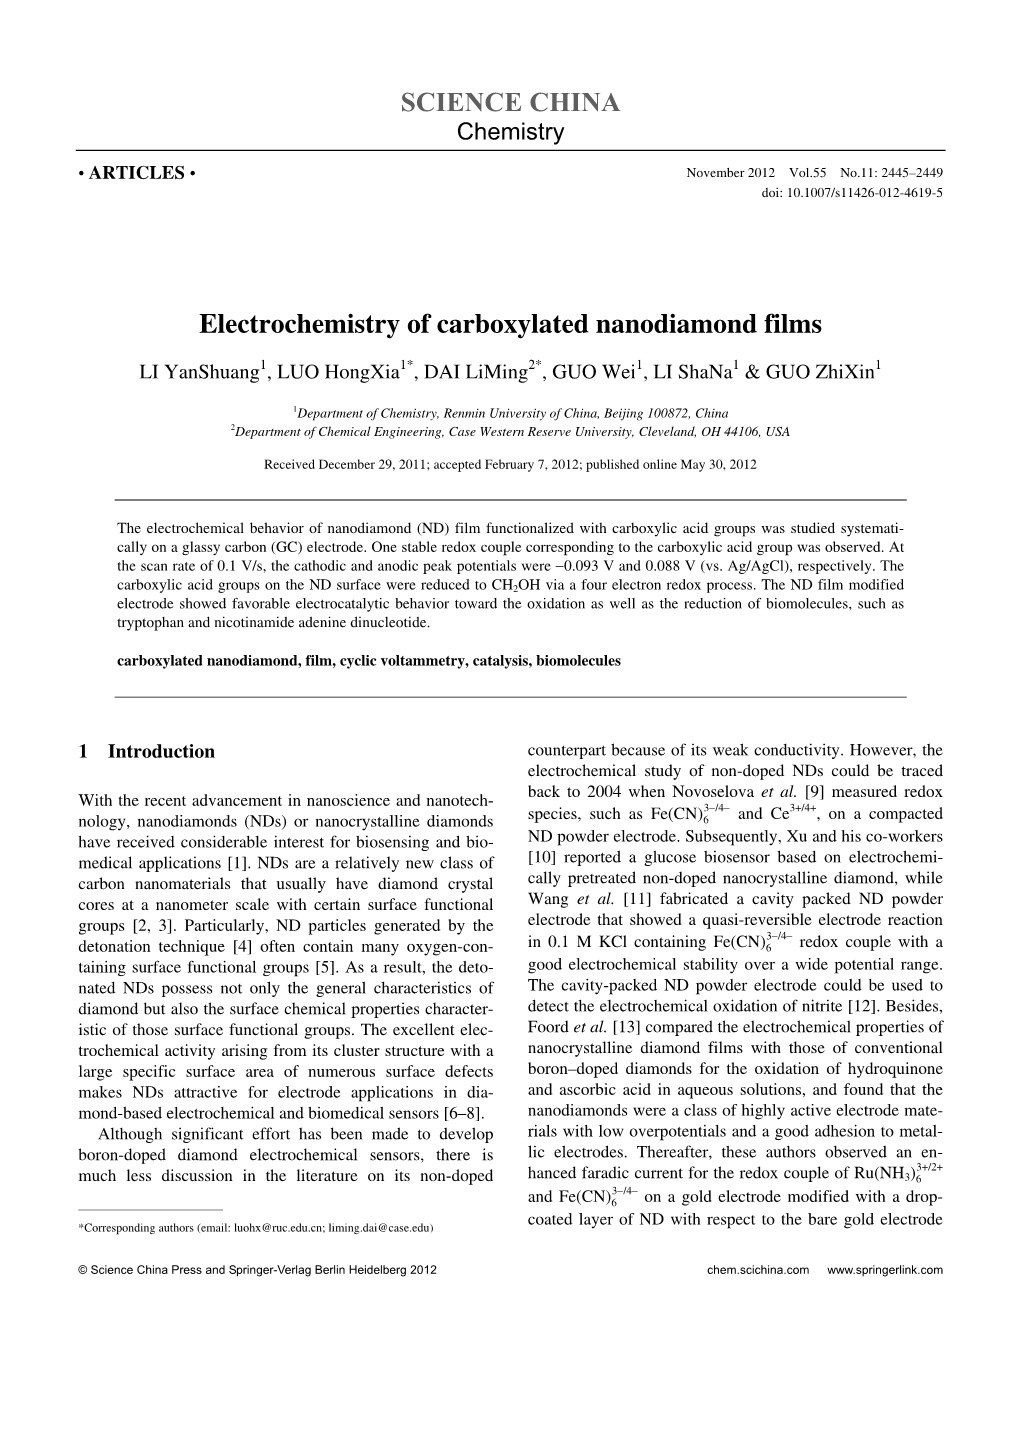 SCIENCE CHINA Electrochemistry of Carboxylated Nanodiamond Films